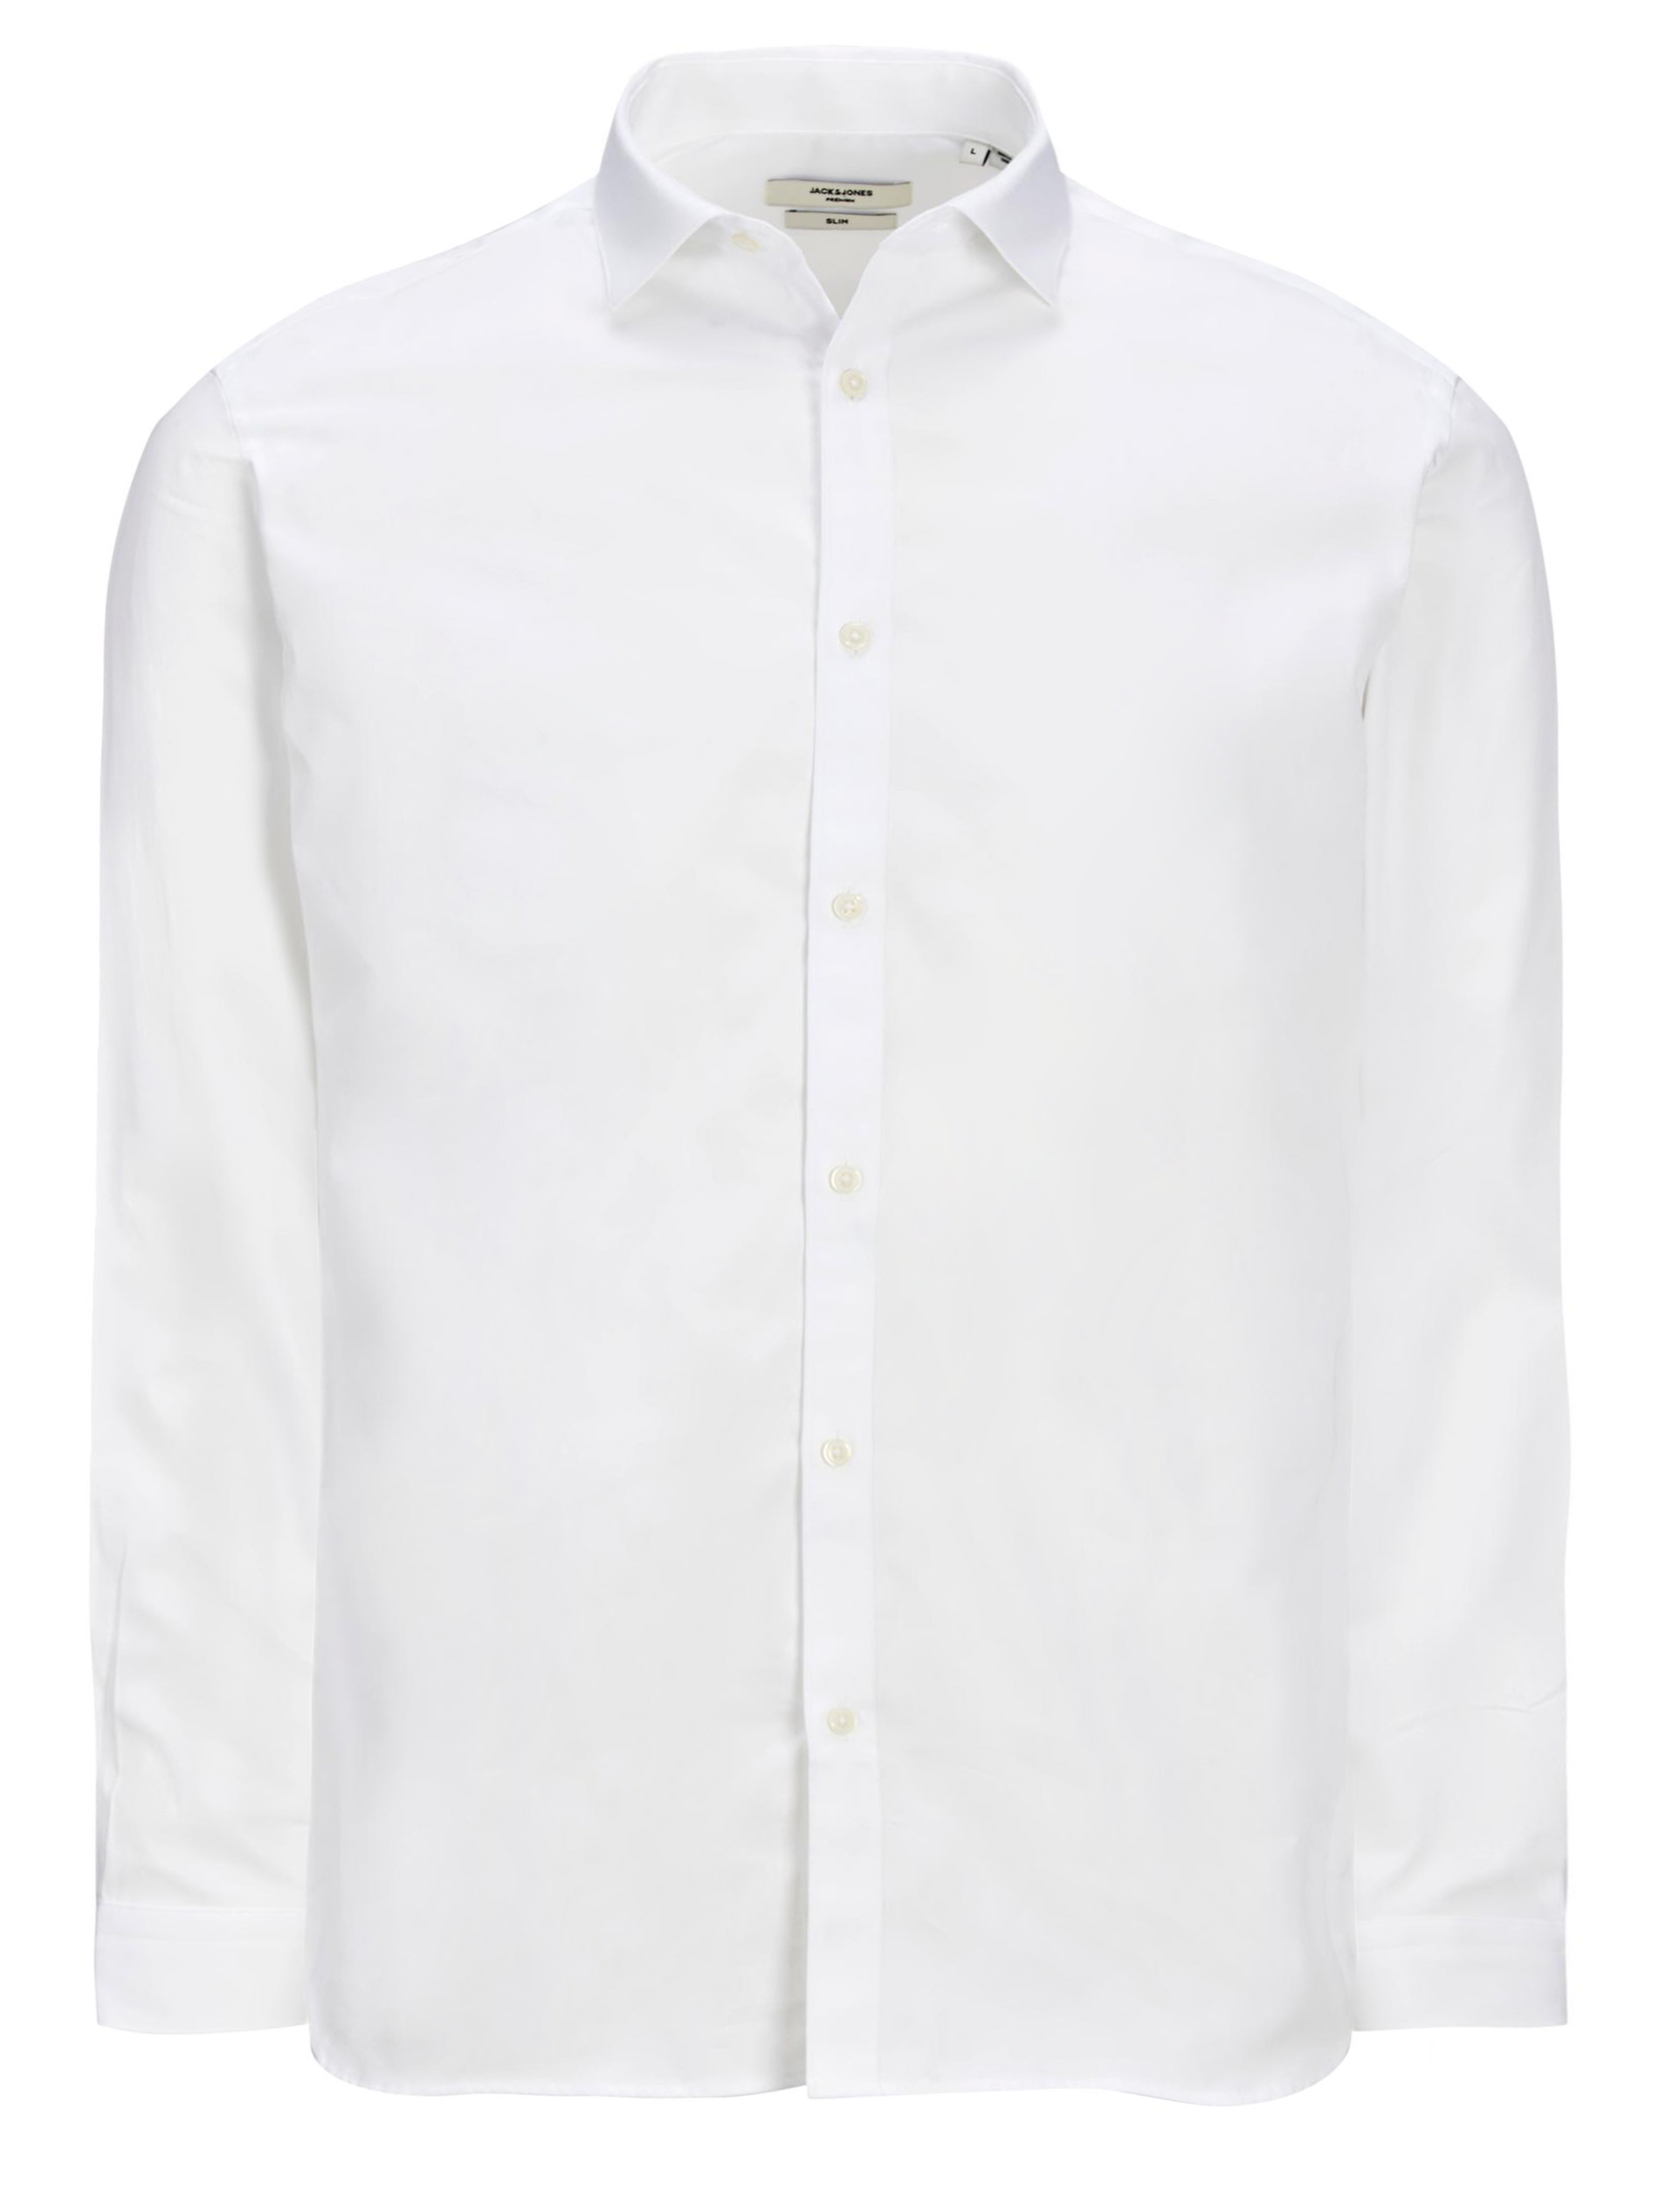 JACK & JONES Big & Tall White Shirt | BadRhino 2